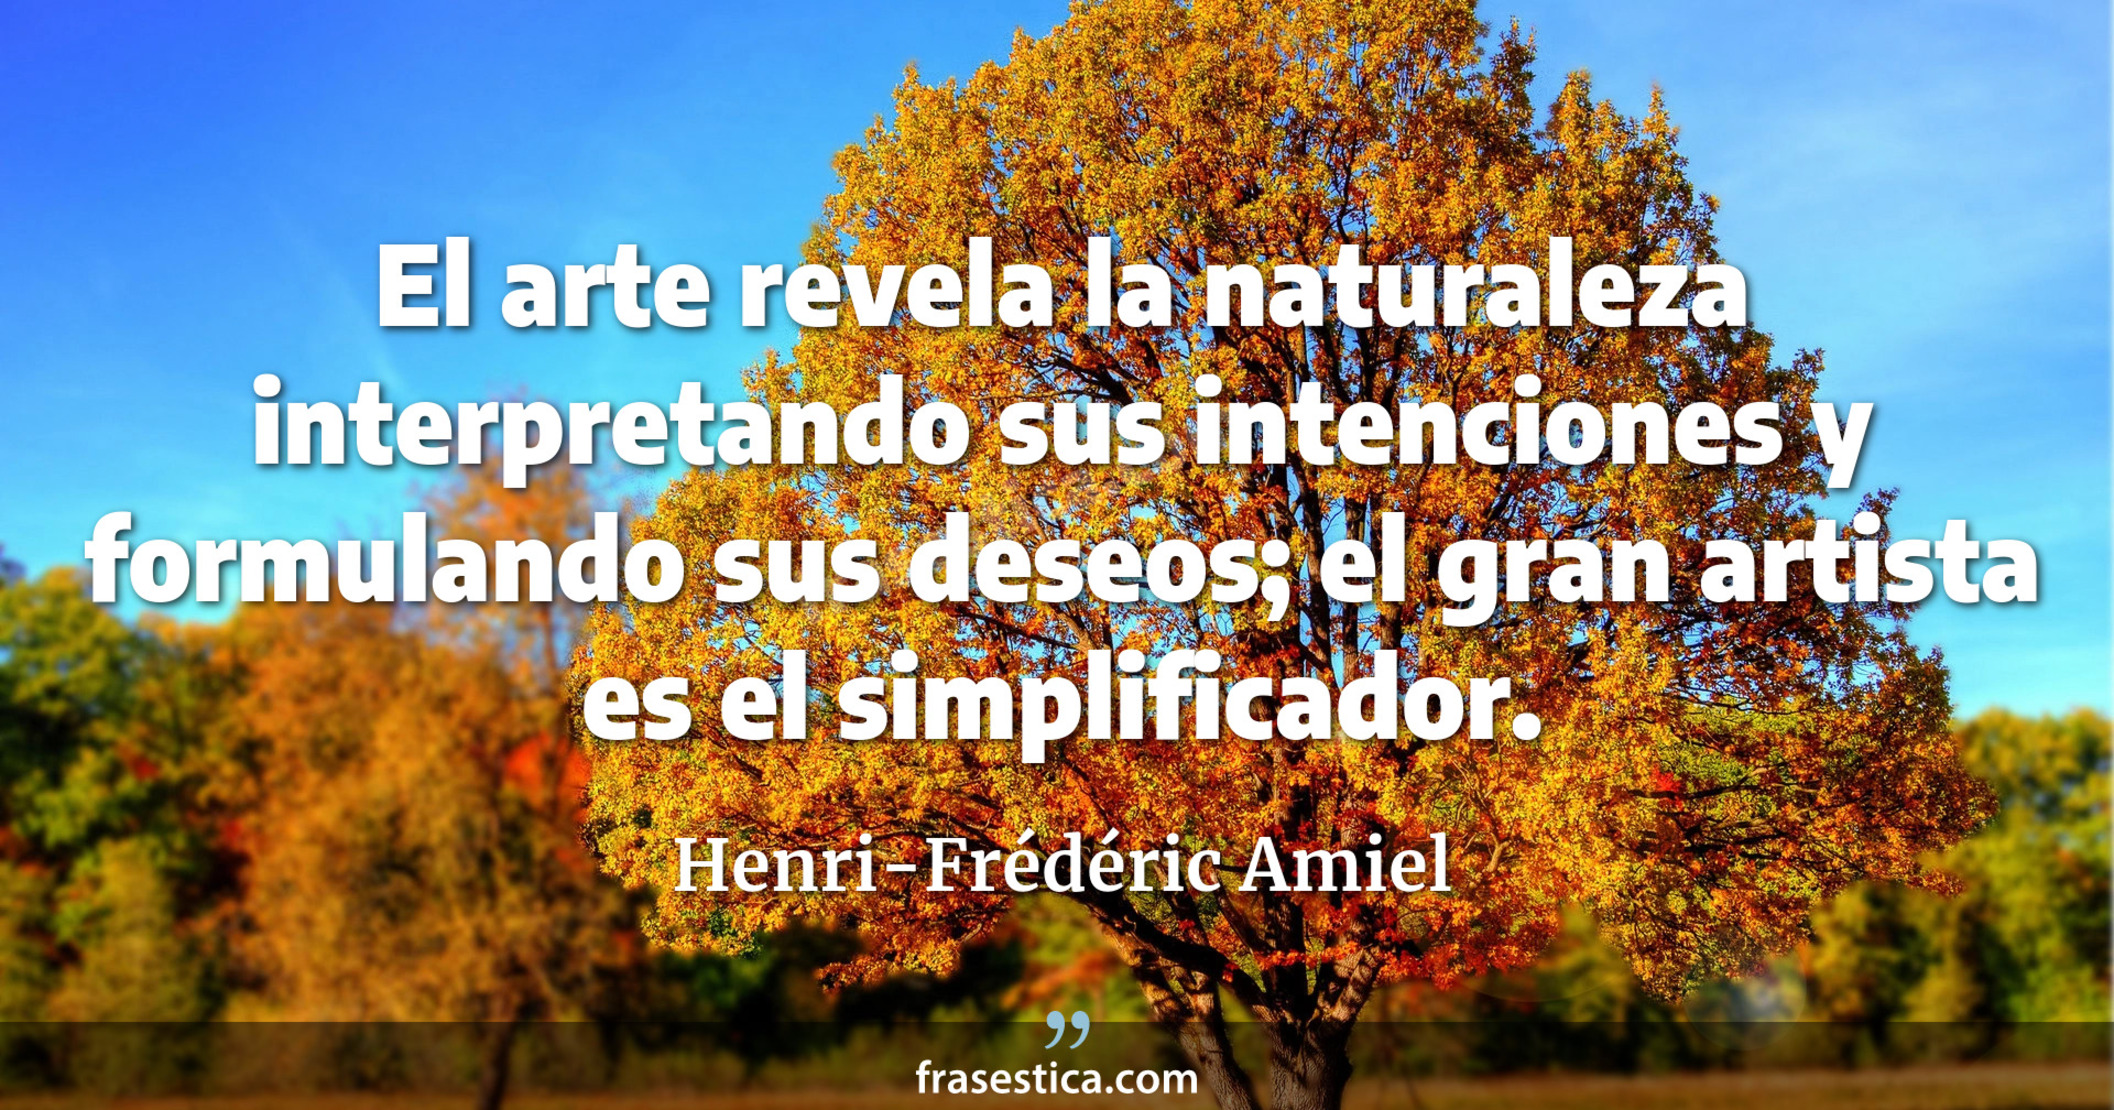 El arte revela la naturaleza interpretando sus intenciones y formulando sus deseos; el gran artista es el simplificador. - Henri-Frédéric Amiel